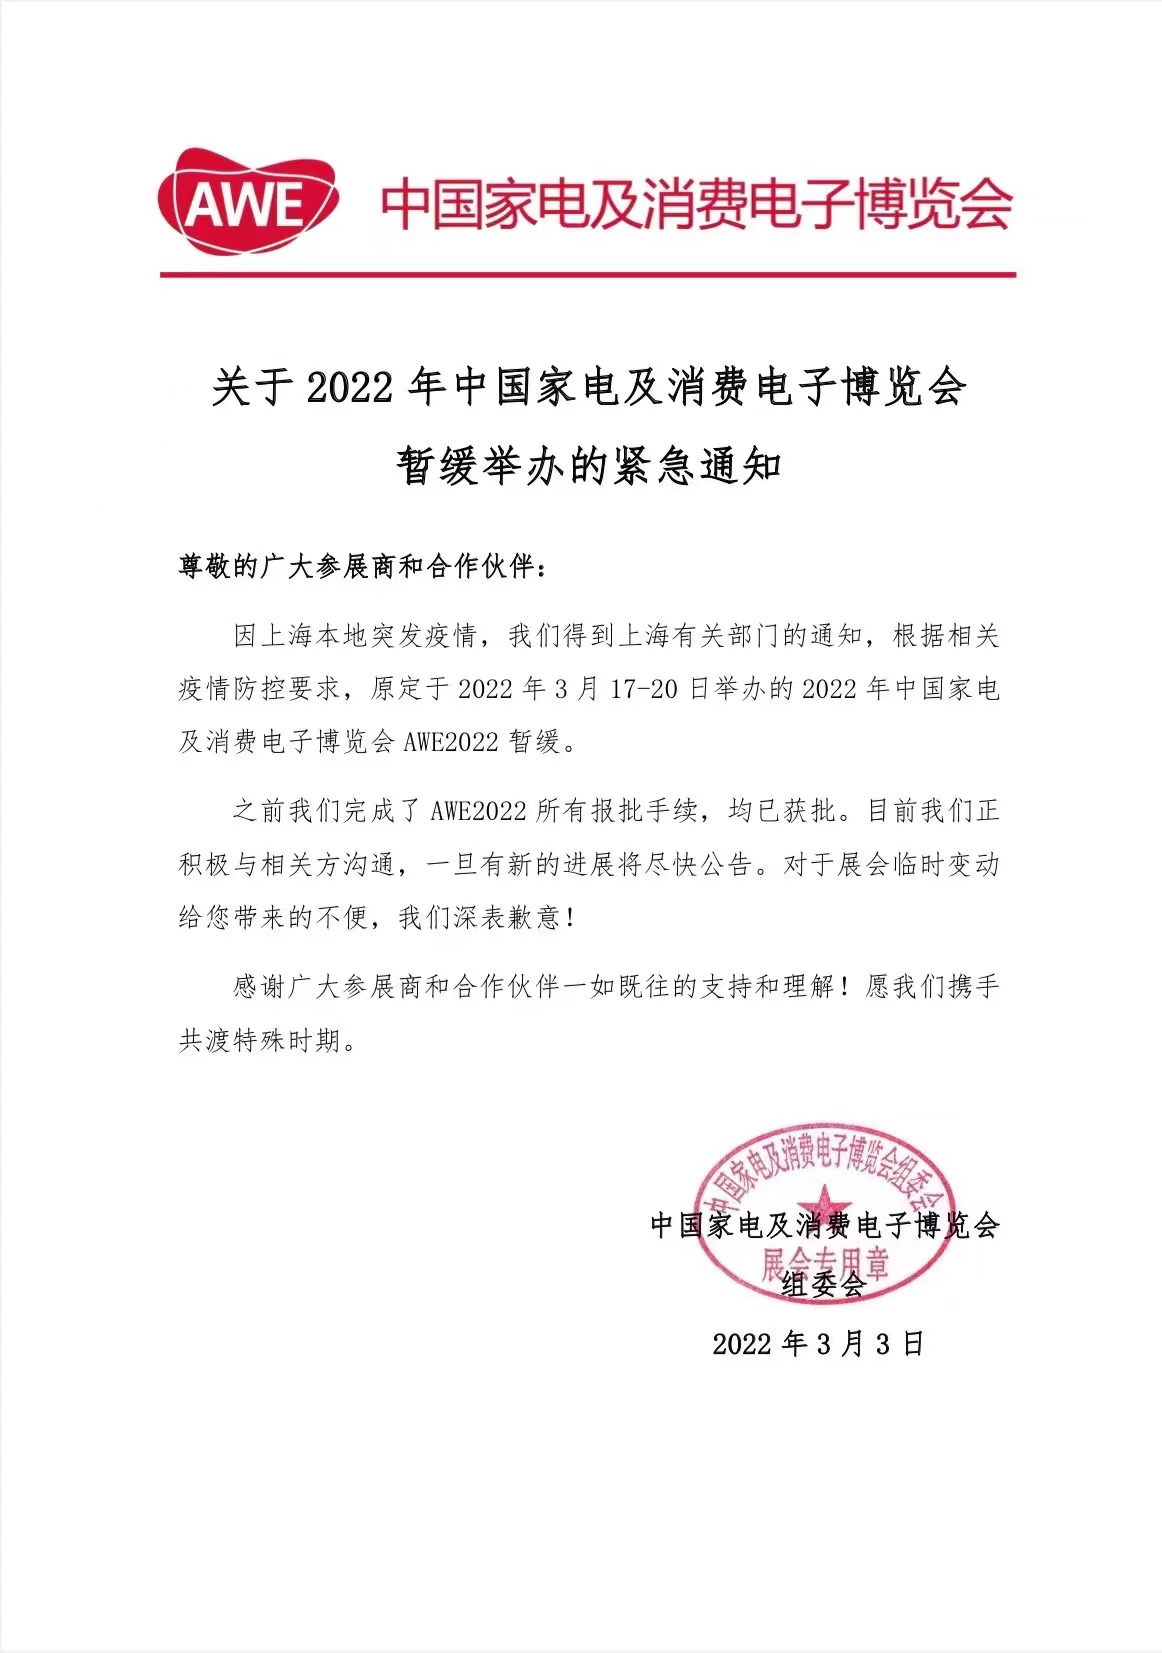 因上海突发疫情，原定于2022年3月17--20日举办的AWE中国家电及消费电子博览会暂缓。